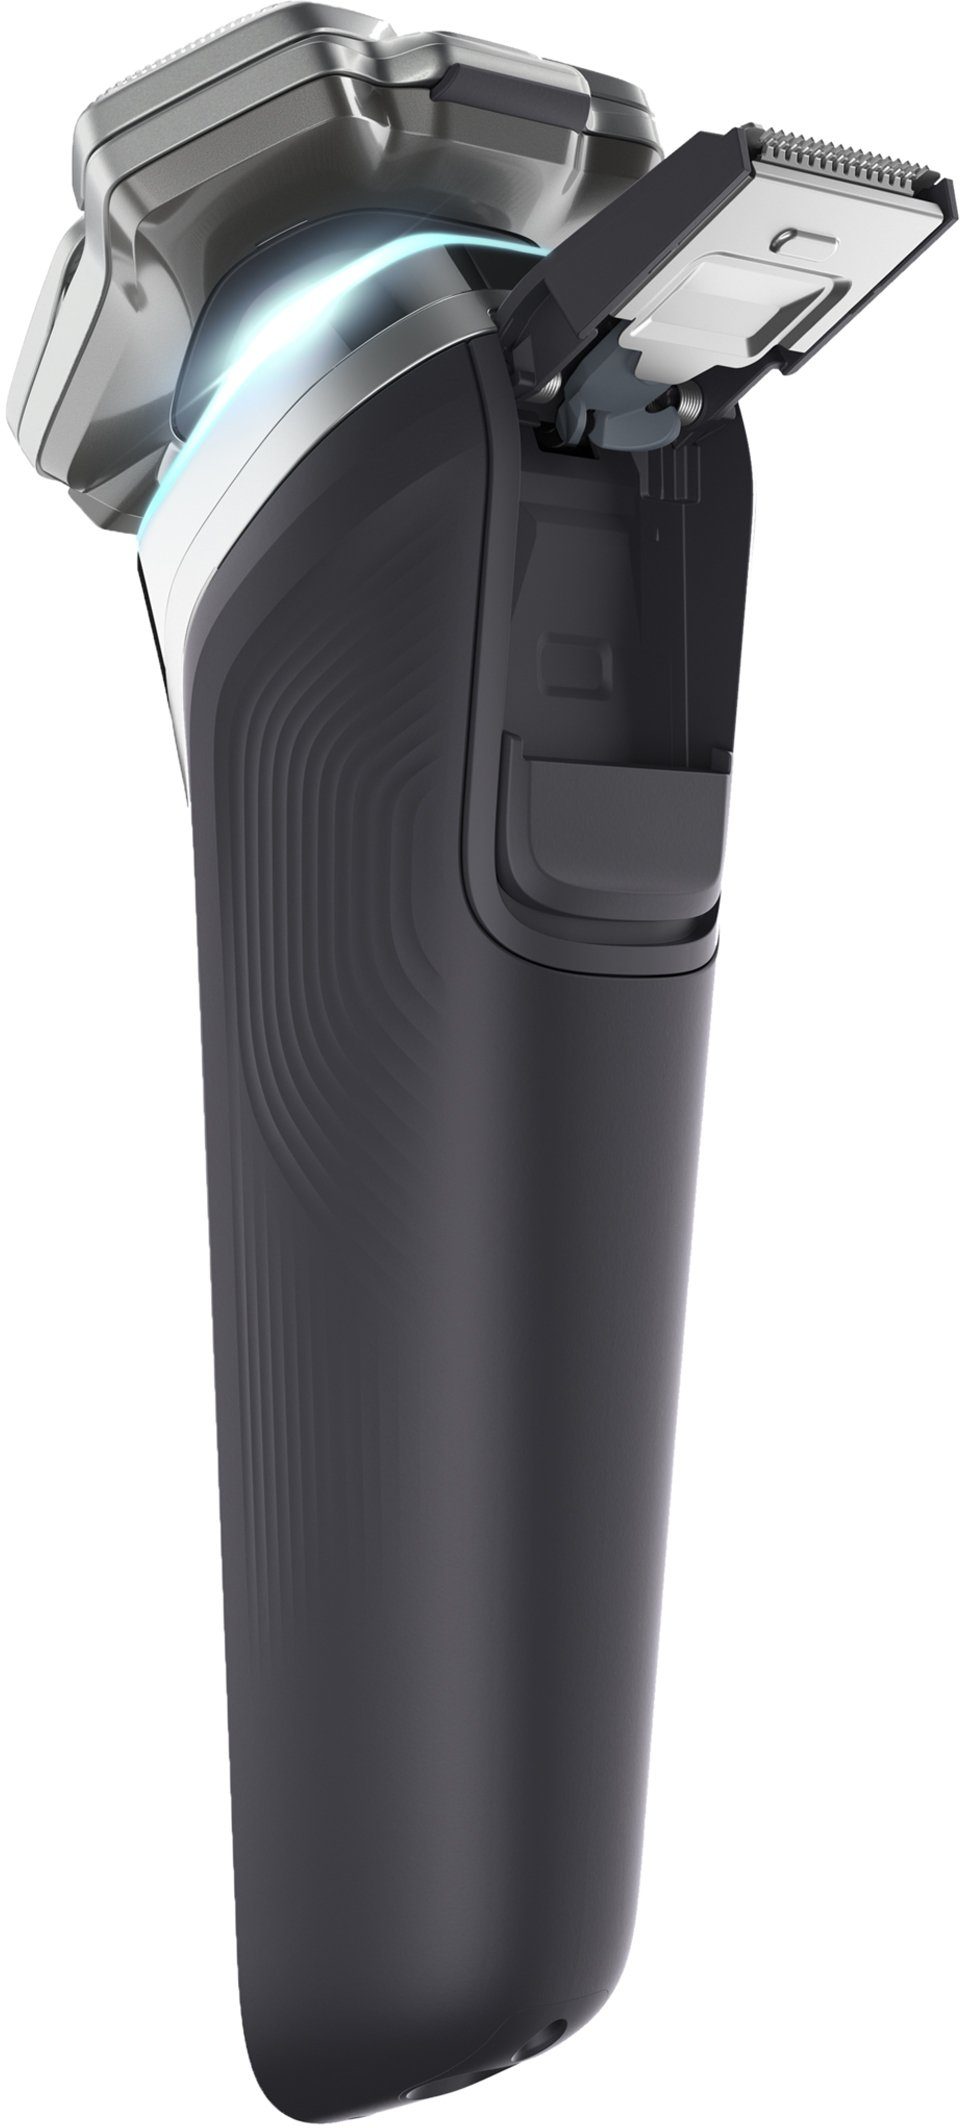 Philips Elektrorasierer Shaver series und Ladestation inkl. Skin Technologie, Etui IQ S9985/35, 9000 mit